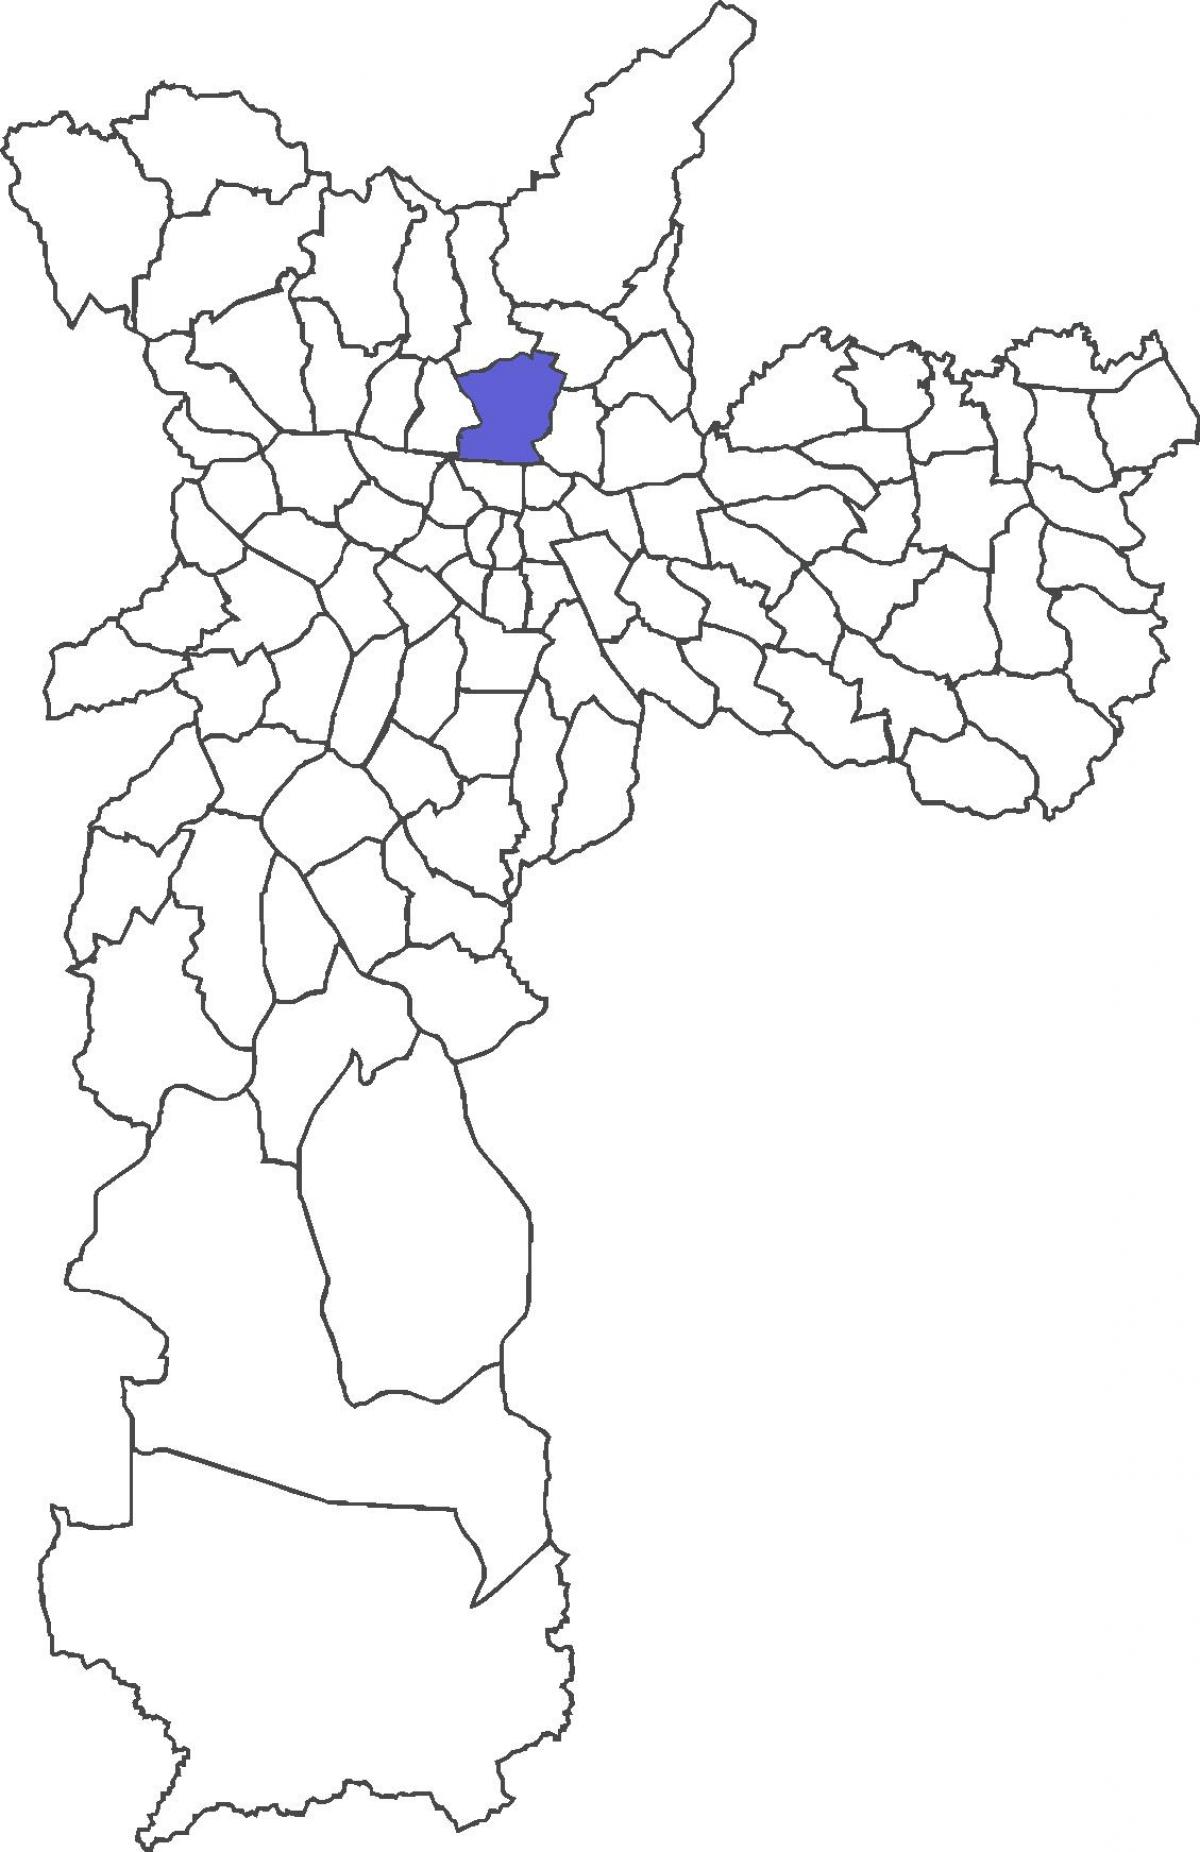 Քարտեզ Սանտանան շրջան